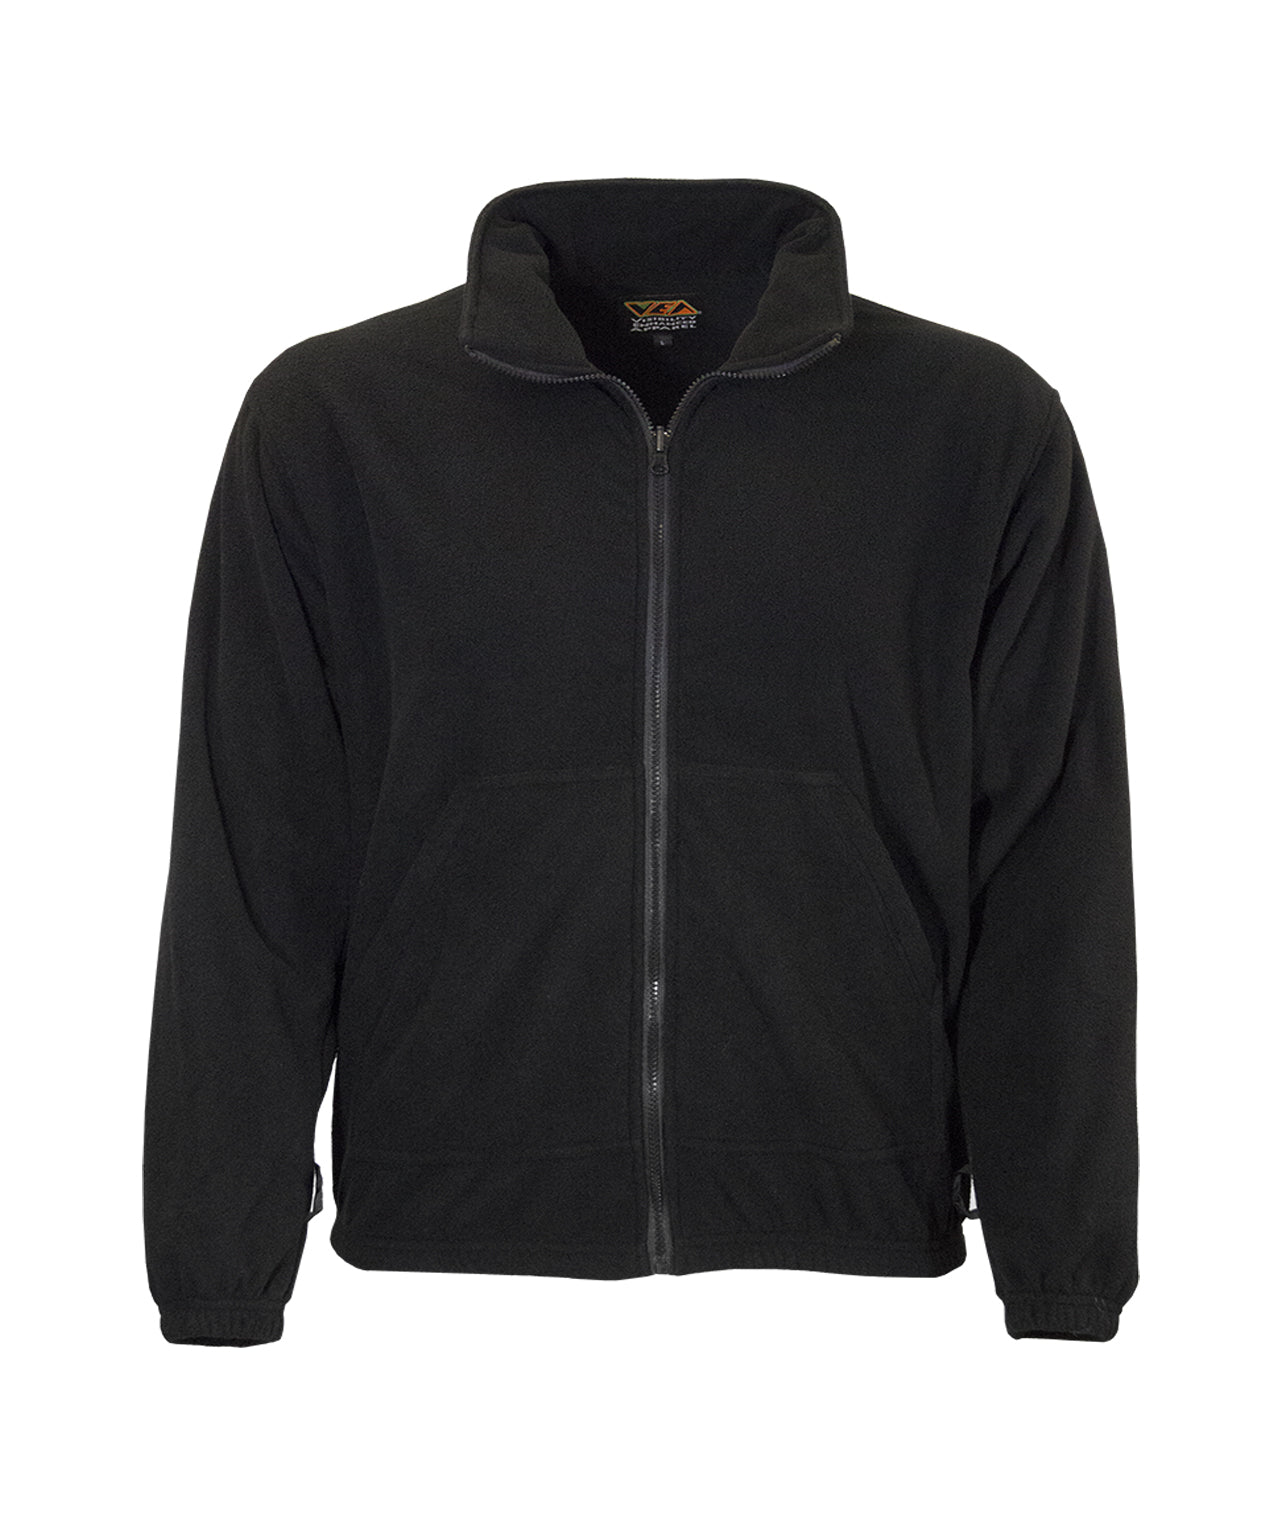 Pocket-detail fleece sweatshirt - Black - Men